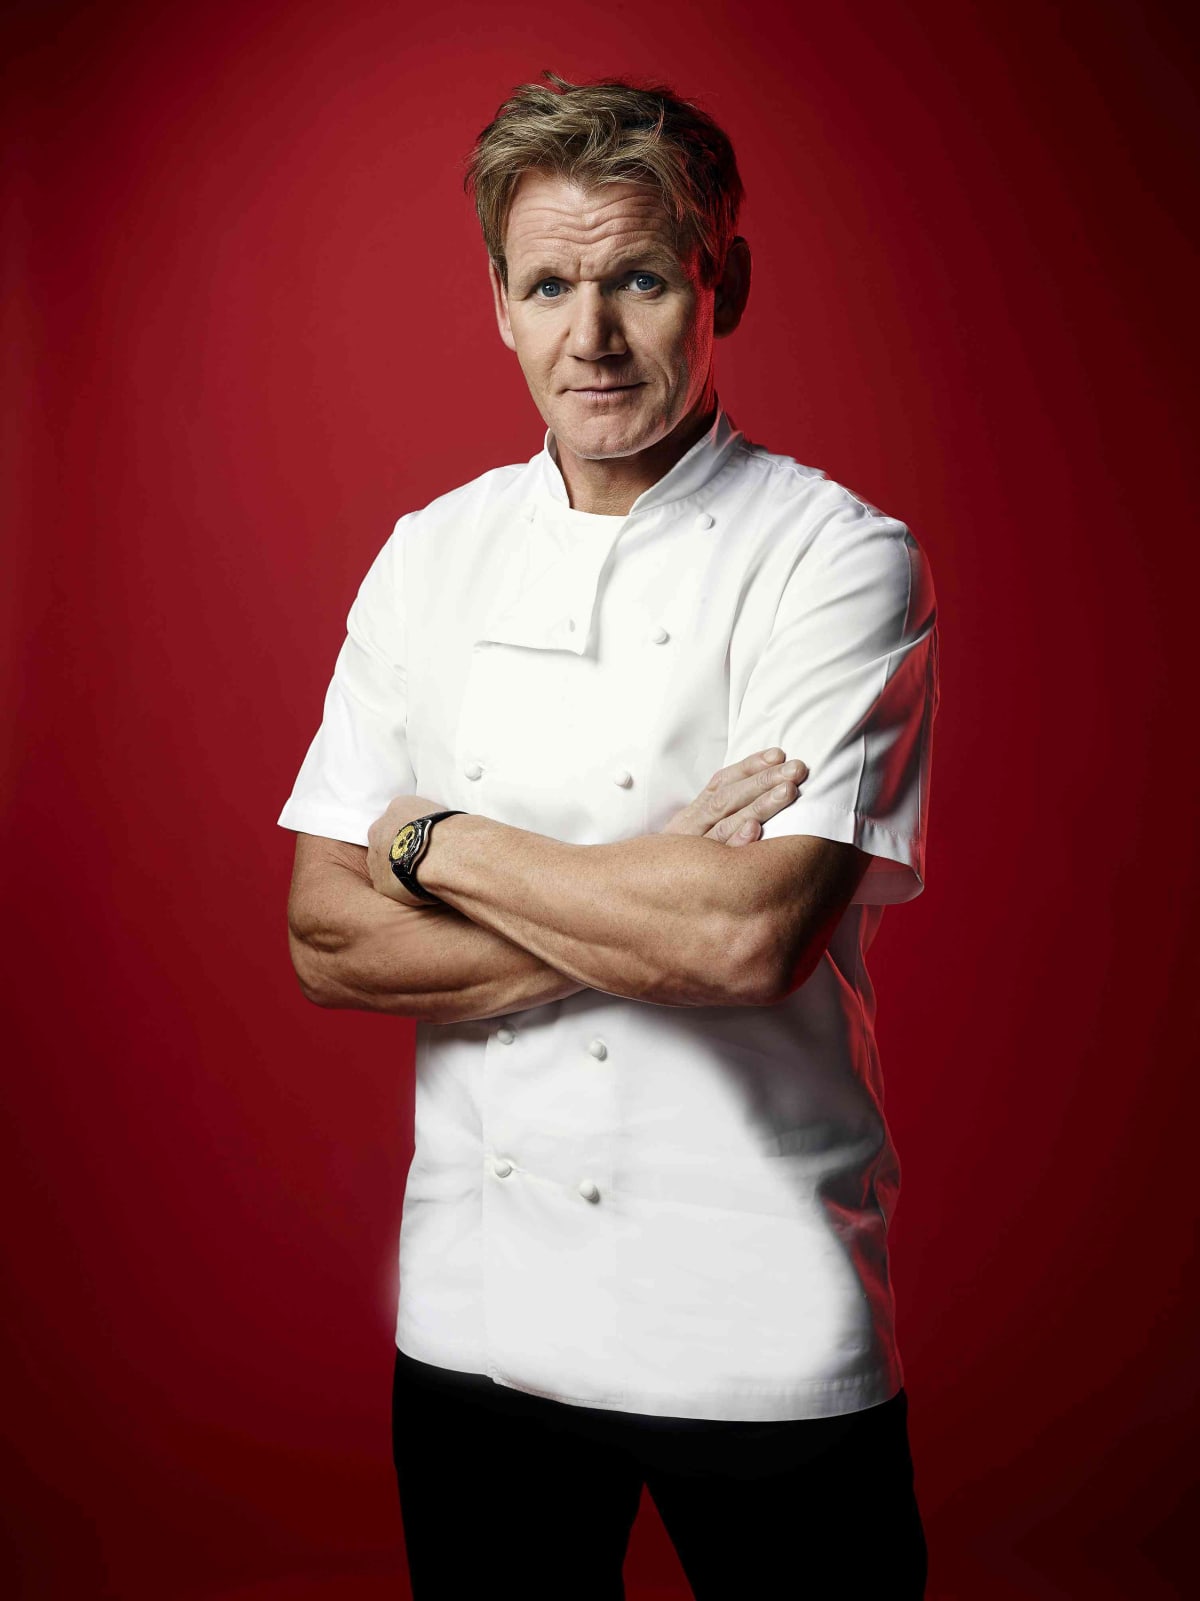 Chef Gordon Ramsay crossing his arms